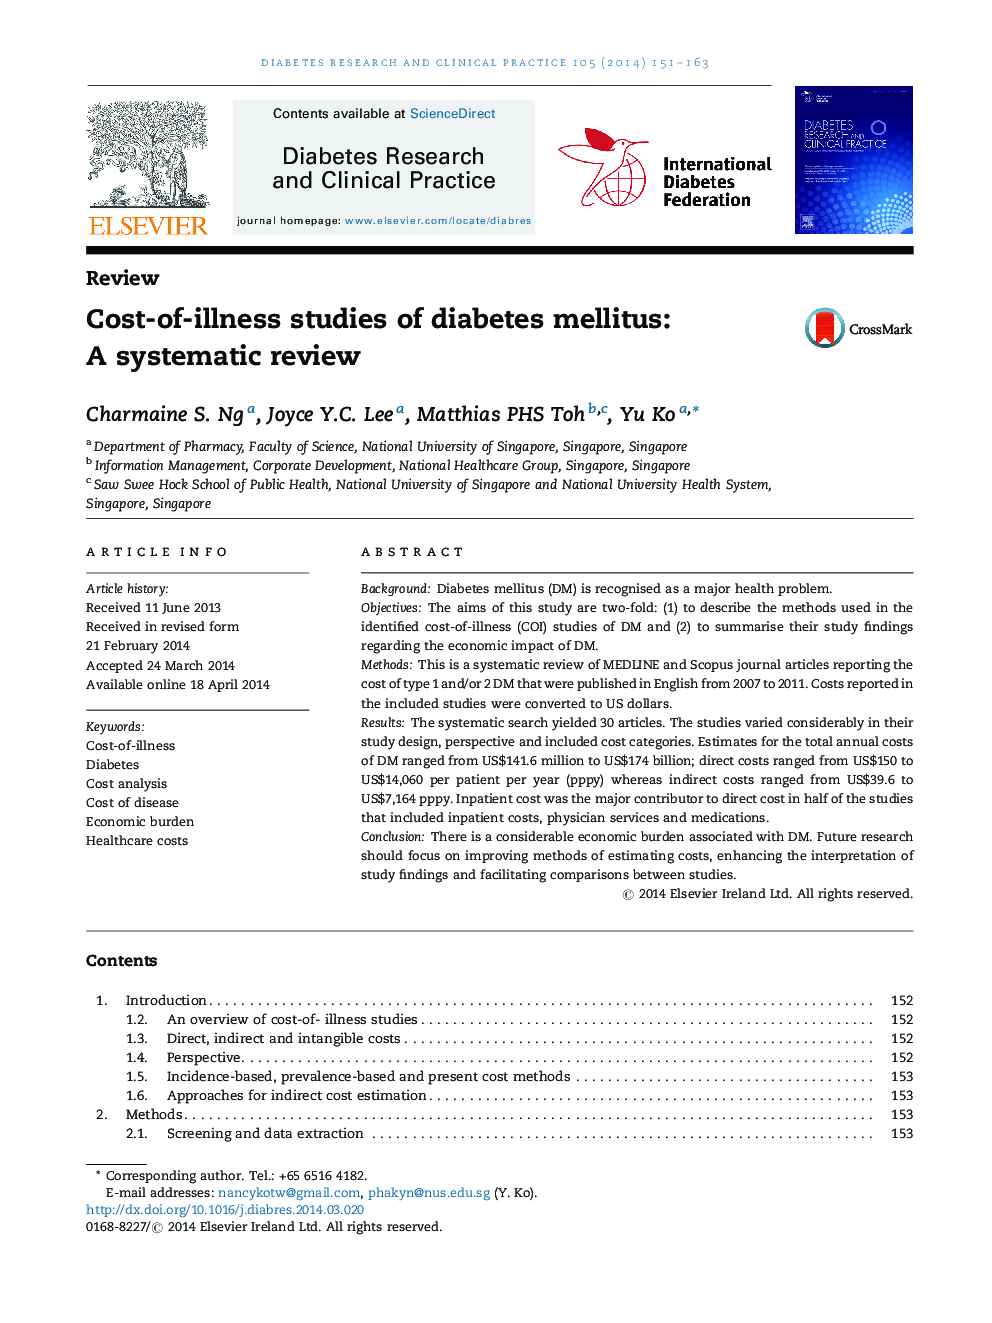 مطالعات هزینه های بیماری دیابت: یک بررسی سیستماتیک 